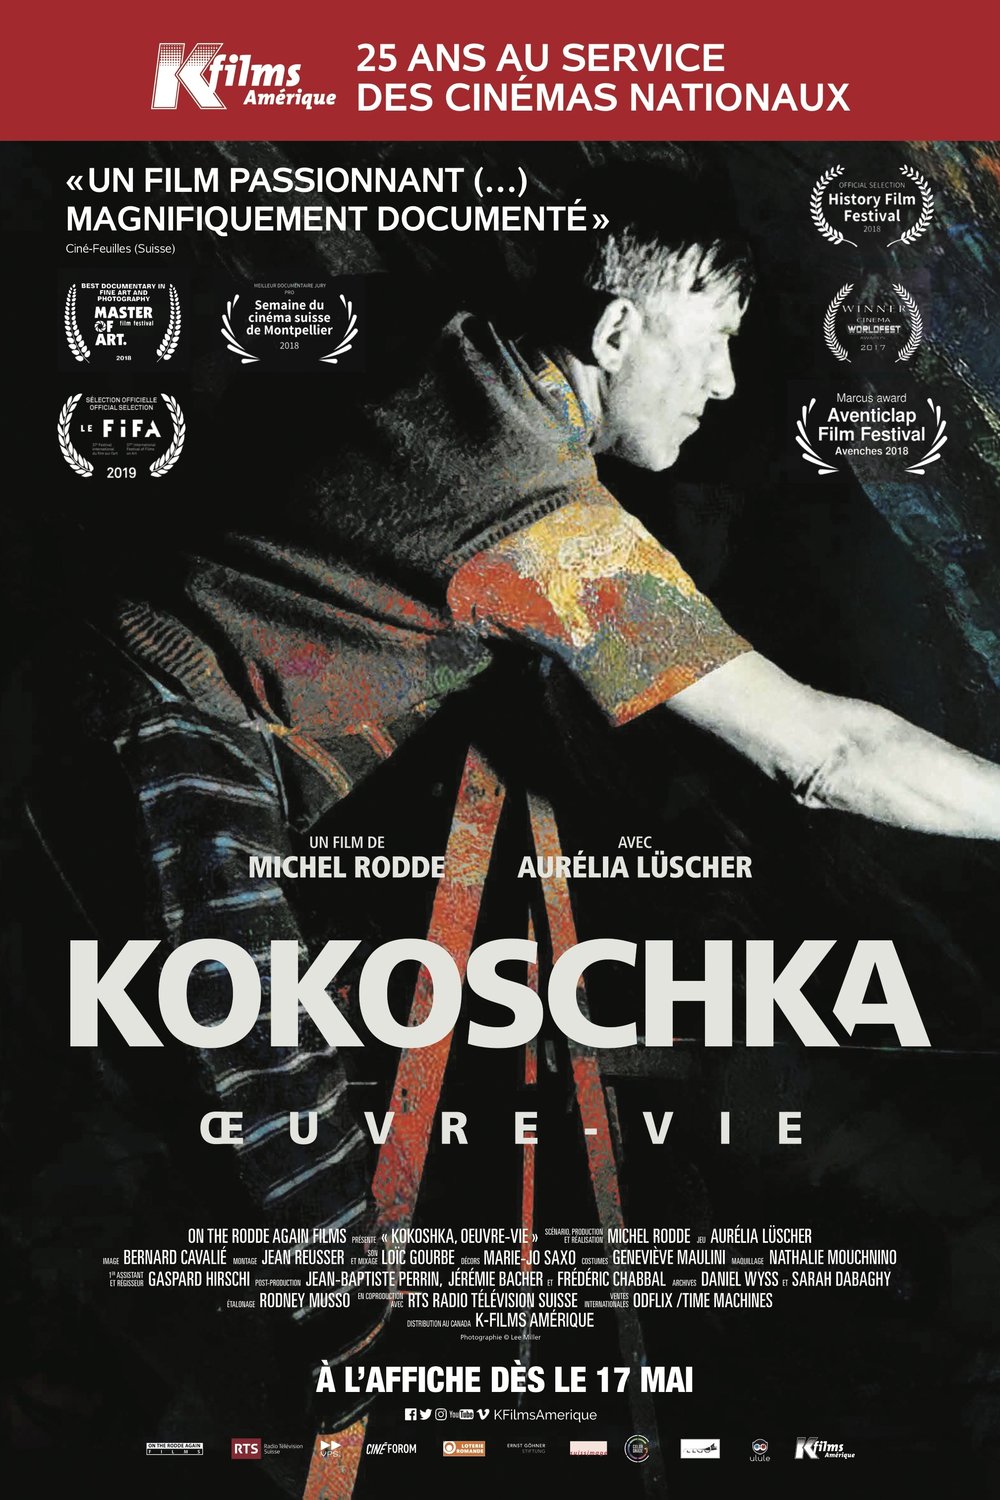 L'affiche du film Kokoschka, Oeuvre-Vie